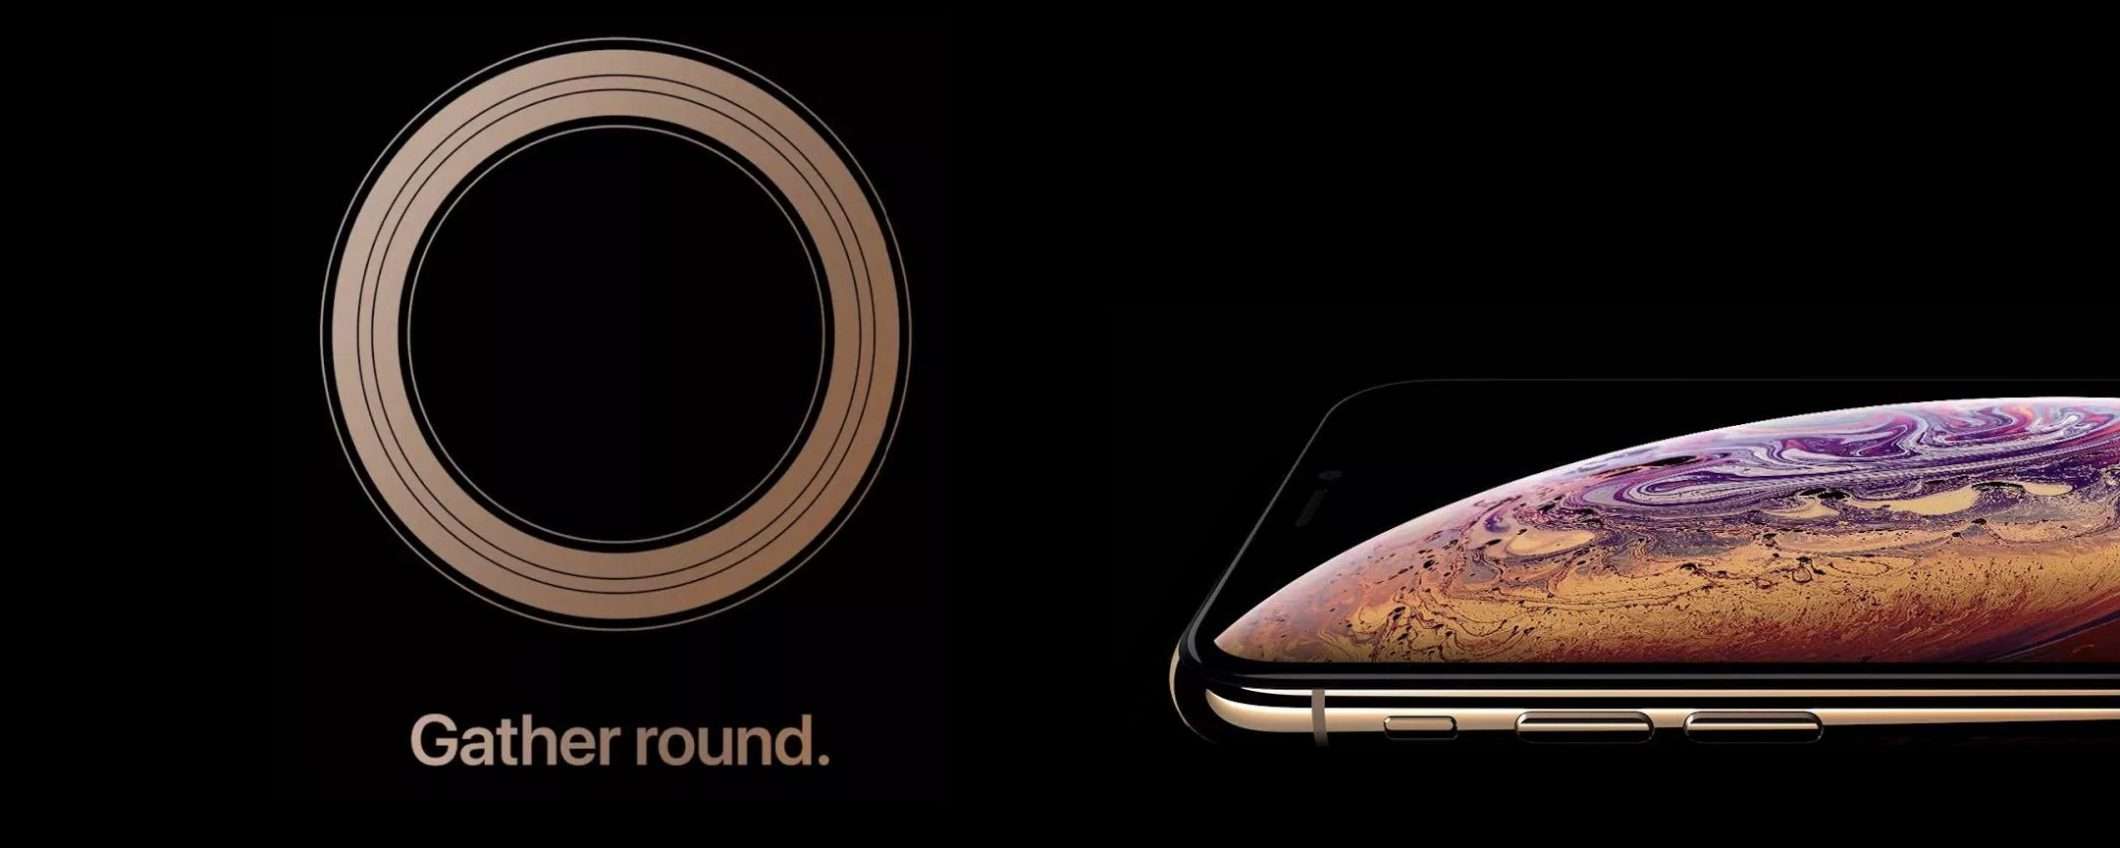 iPhone XS: l'annuncio il 12 settembre